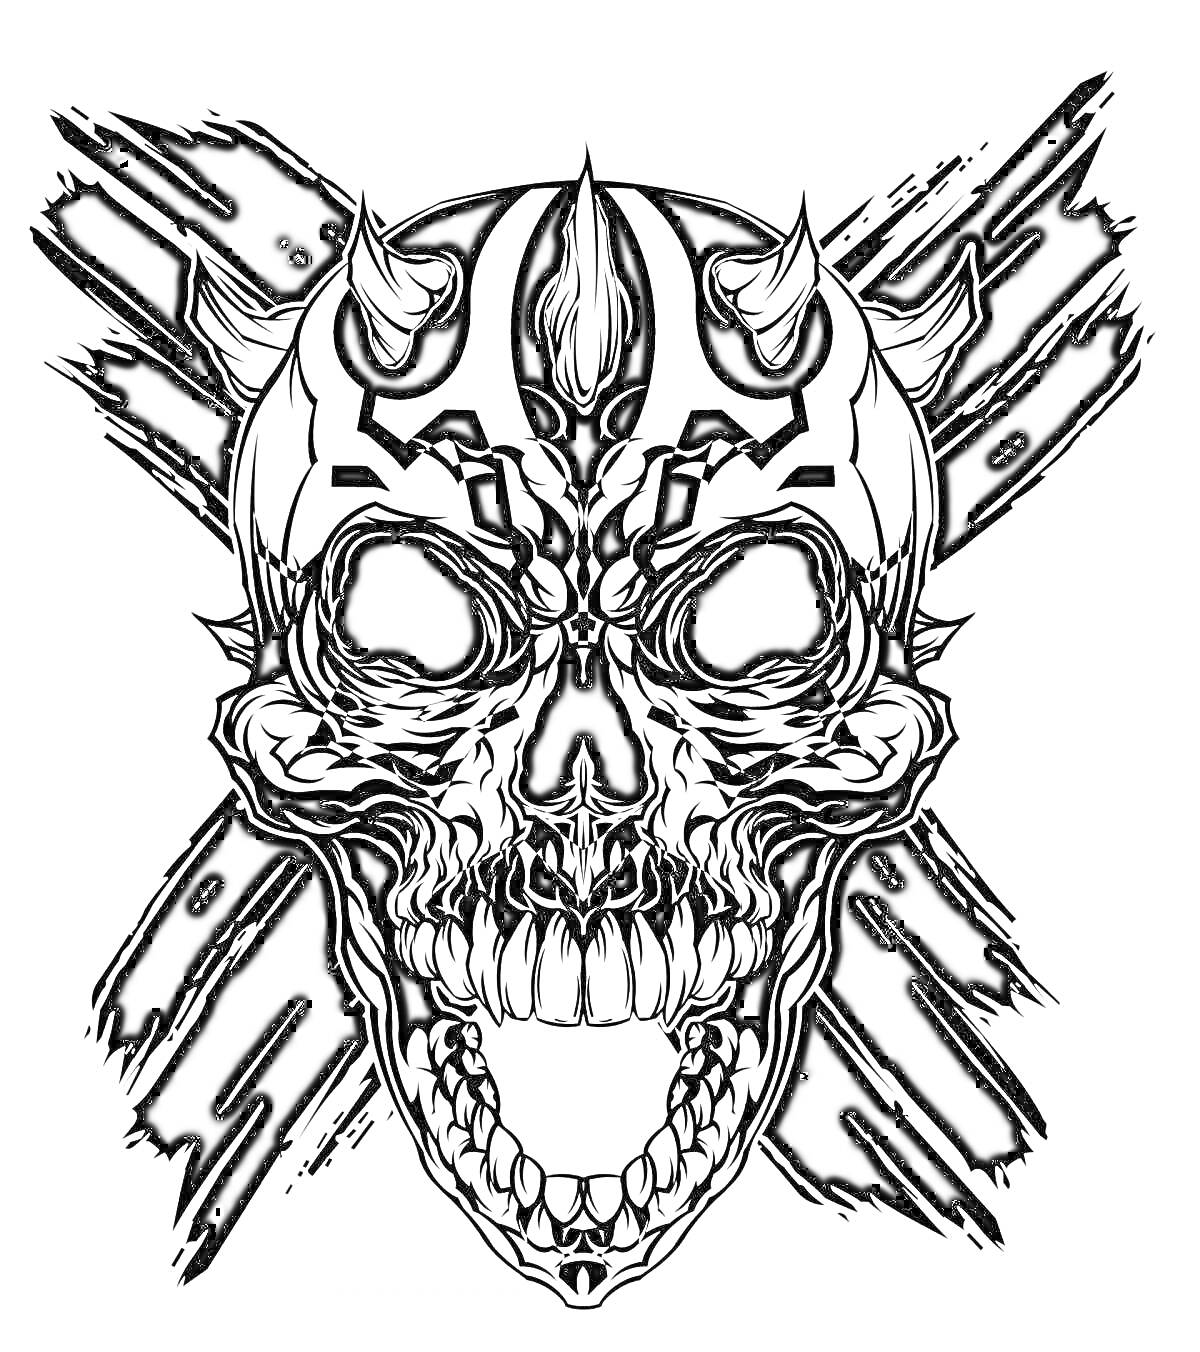 Раскраска Череп демона с рогами и татуировками в стиле Дарт Мола на фоне перекрещенных полос